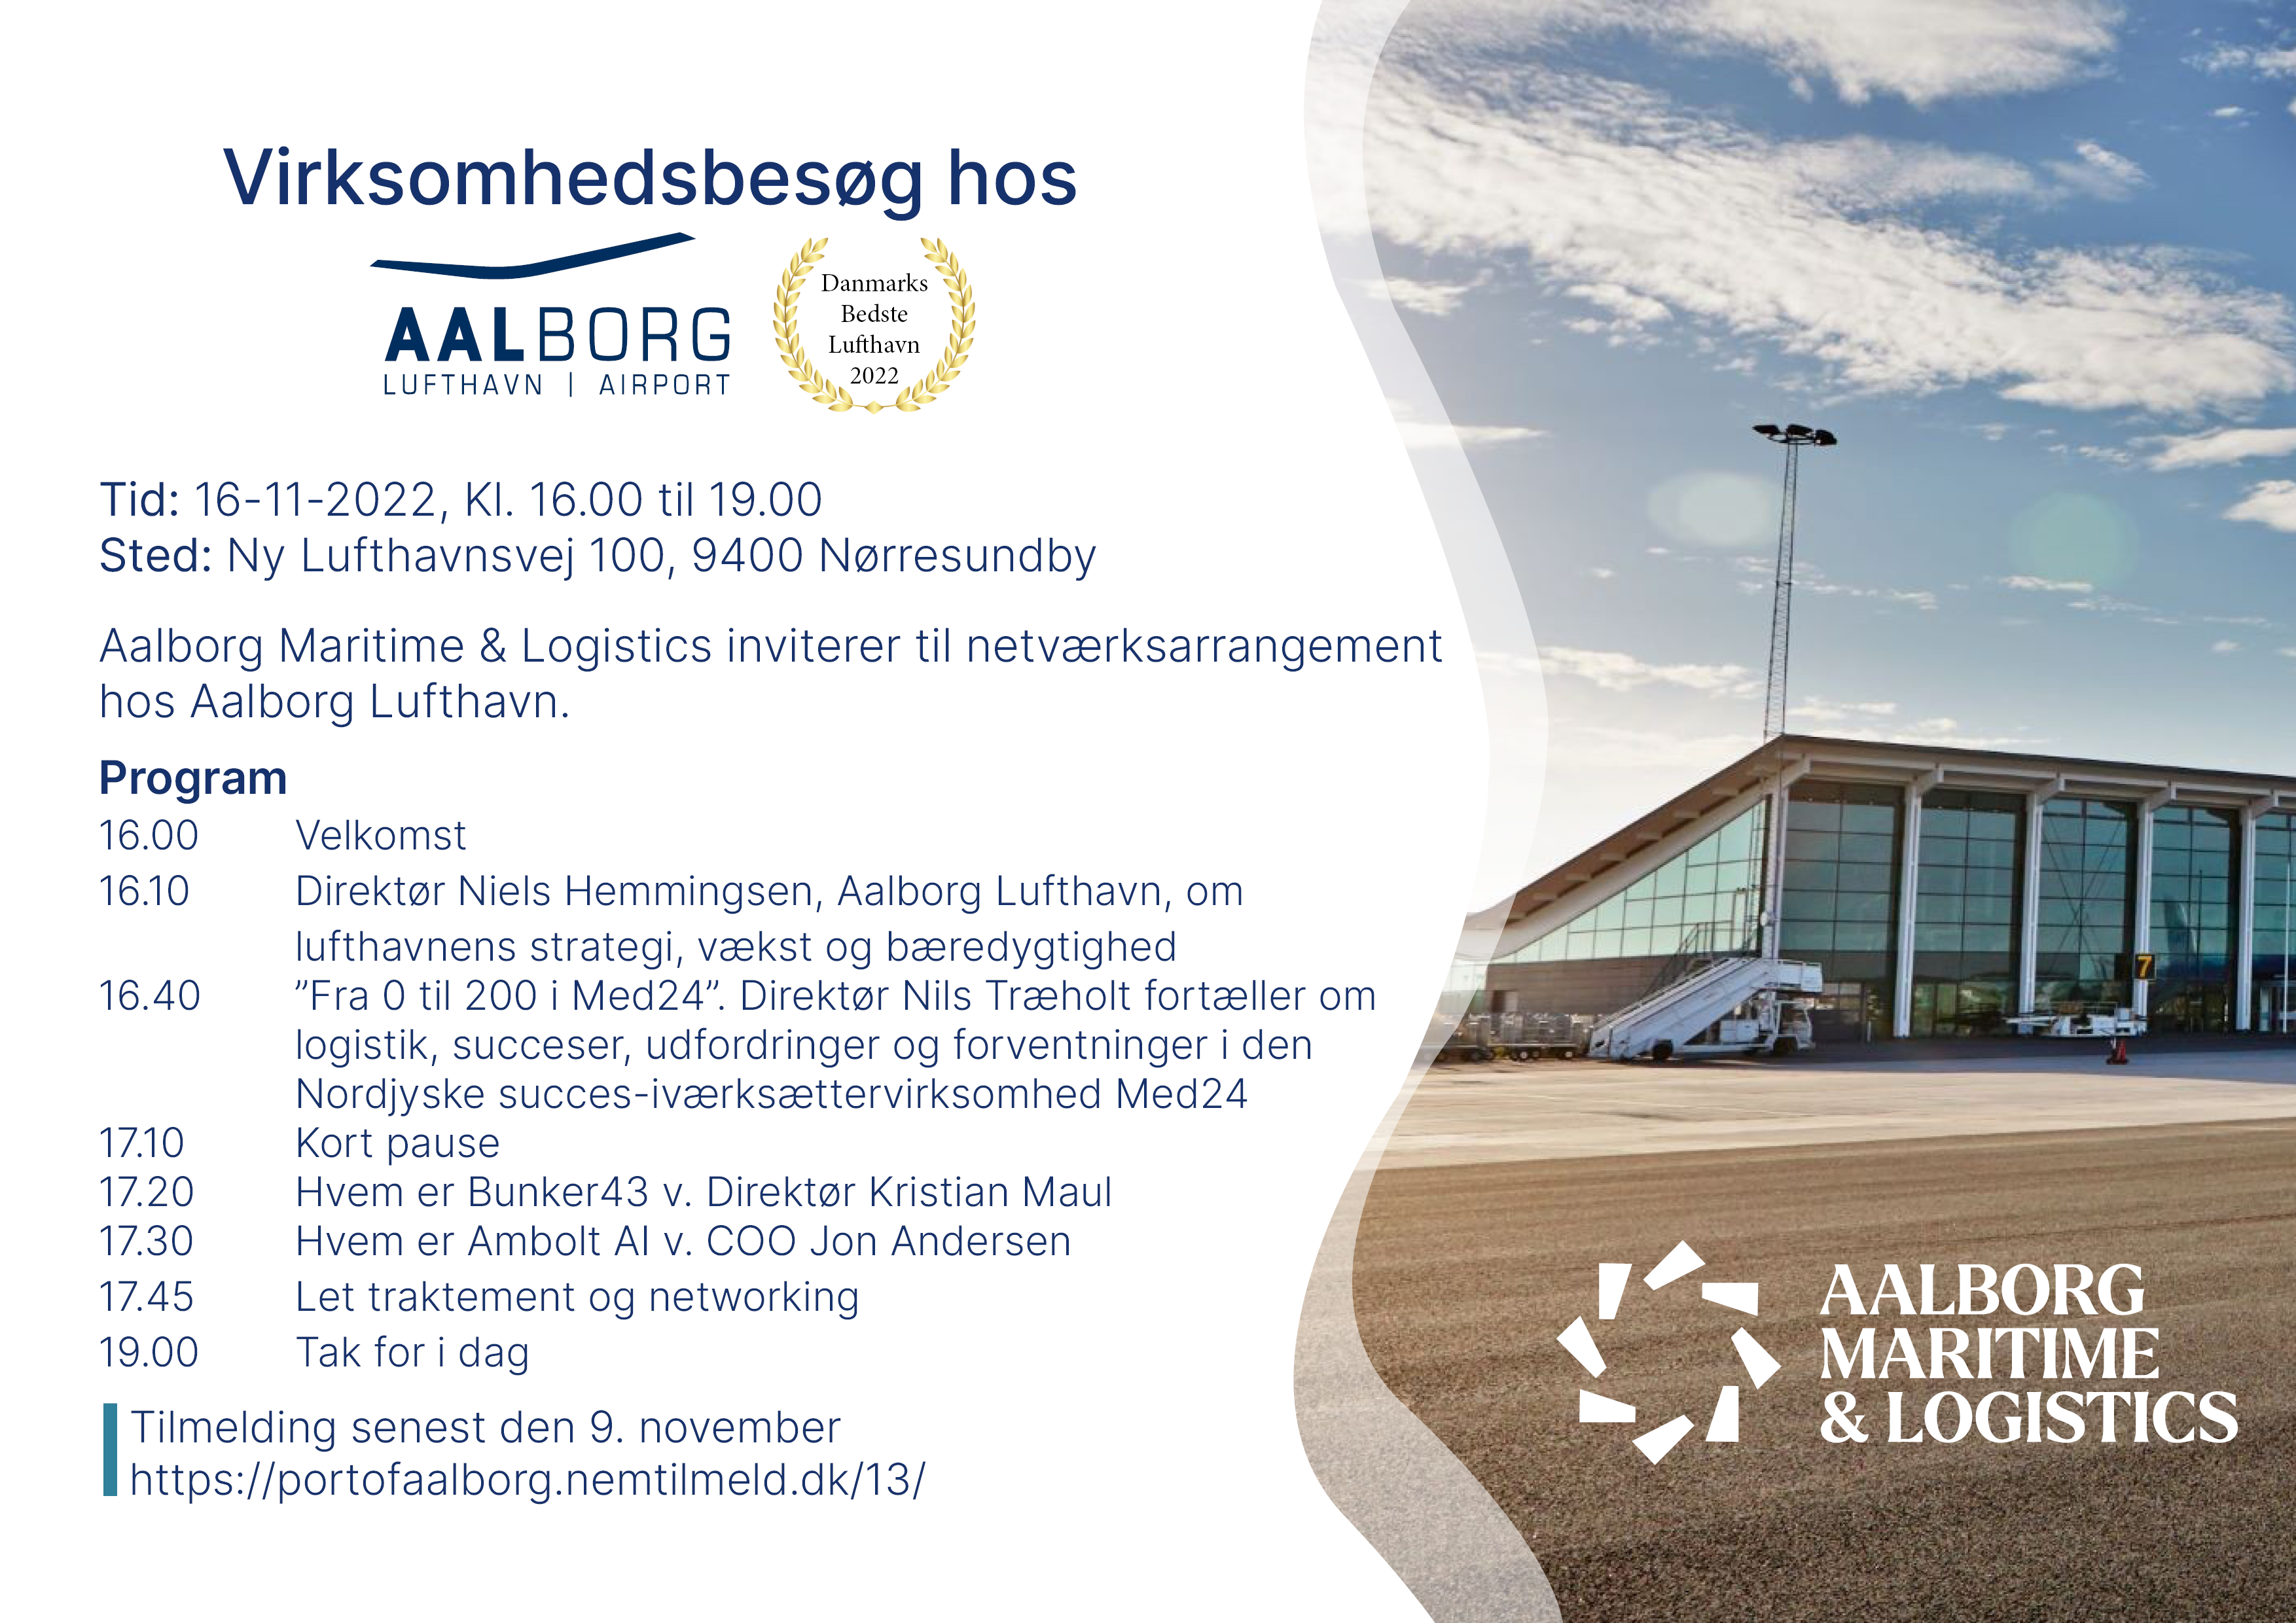 Virksomhedsbesøg hos Aalborg Lufthavn